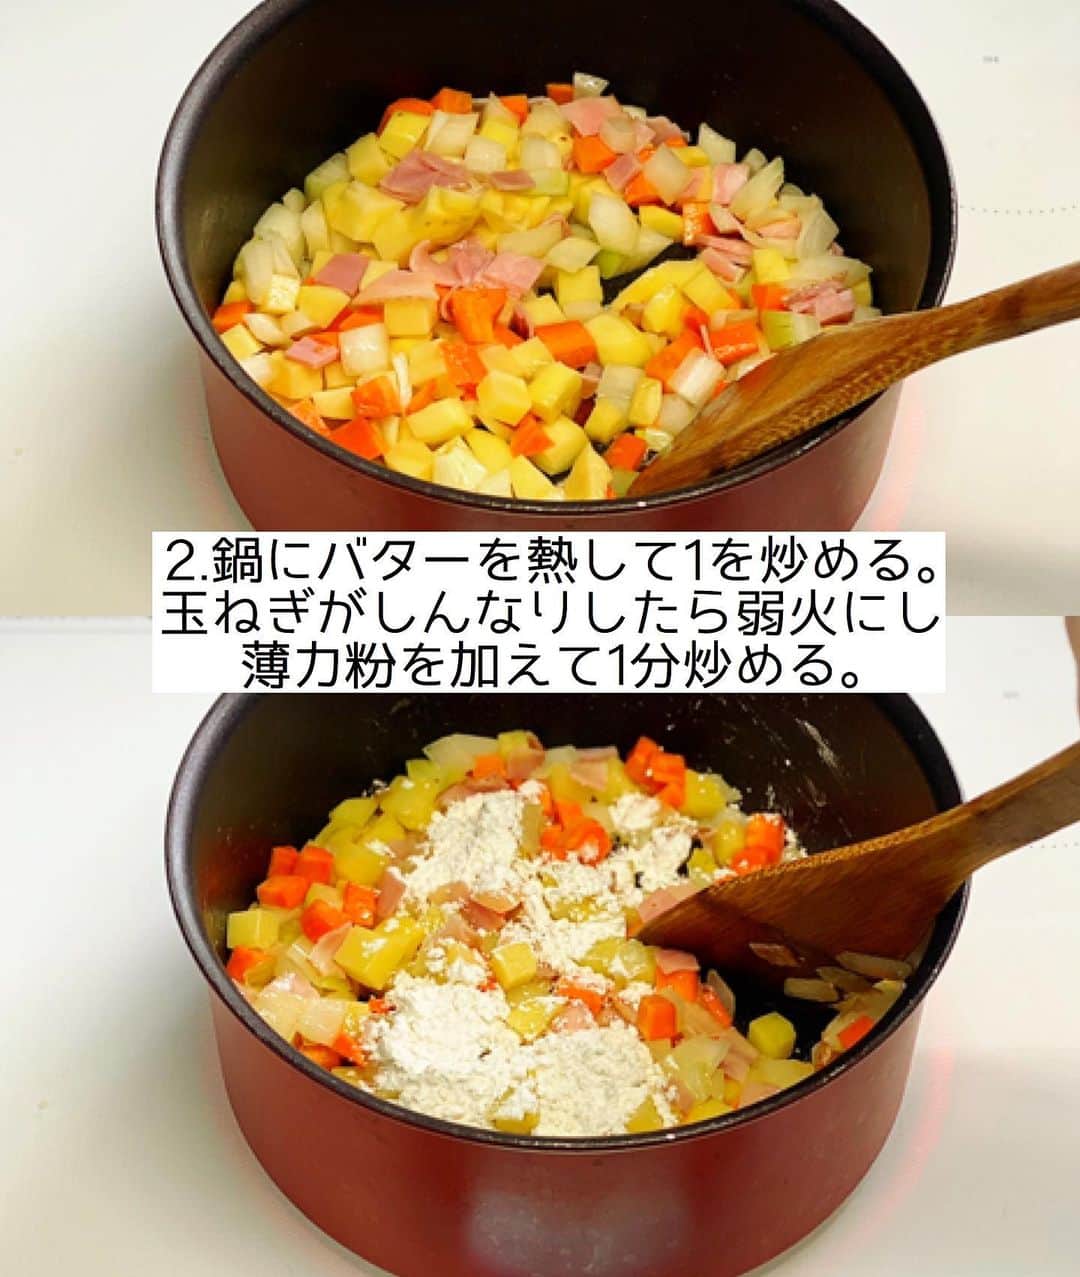 Mizuki【料理ブロガー・簡単レシピ】さんのインスタグラム写真 - (Mizuki【料理ブロガー・簡単レシピ】Instagram)「・﻿ 【#レシピ 】ーーーーーーーーーーーーー﻿ ♡生クリームなし！クラムチャウダー♡﻿ ーーーーーーーーーーーーーーーーーーー﻿ ﻿ ﻿ ﻿ おはようございます(*^^*)﻿ ﻿ 今日はコロコロ野菜たっぷりの﻿ クラムチャウダーのご紹介です♩﻿ ﻿ あさりは缶詰め(水煮)を使って﻿ 手間も時間も大幅カット！﻿ 更に生クリーム不要でお手軽ですよ〜♡﻿ ﻿ ポットパイにしたり、パンにつけたり﻿ パスタにかけるのもおすすめ♩﻿ クリスマスメニューにもぴったりなので﻿ お気軽にお試し下さいね(*^^*)﻿ ﻿ ﻿ ﻿ ＿＿＿＿＿＿＿＿＿＿＿＿＿＿＿＿＿＿＿＿﻿ 【3〜4人分】﻿ あさり水煮缶...1缶(130g)﻿ ベーコン...2枚﻿ じゃがいも...1個﻿ 玉ねぎ...1/2個﻿ 人参...1/2本﻿ バター...15g﻿ 薄力粉...大1.5﻿ ●水...300ml﻿ ●コンソメ...小1/2﻿ ☆牛乳...250ml﻿ ☆粉チーズ...大1﻿ ☆塩こしょう...少々﻿ ﻿ 1.ベーコン、じゃがいも、玉ねぎは1cm角に、人参は5mm角に切る。﻿ 2.鍋にバターを入れて中火で熱し、1を炒める。玉ねぎがしんなりしたら弱火にし、薄力粉を振り入れて1分炒める。﻿ 3.●とあさり缶(汁ごと)を加えて混ぜ、弱めの中火で8分程煮る。(たまに混ぜながら)﻿ 4.野菜が柔らかくなったら☆を加え、混ぜながら沸騰直前まで加熱して火を止める。﻿ ￣￣￣￣￣￣￣￣￣￣￣￣￣￣￣￣￣￣￣￣﻿ ﻿ ﻿ ﻿ 《ポイント》﻿ ♦︎あさり水煮缶は缶汁含めて130gのものを使用しました♩﻿ ♦︎火の通りにくい人参は他の野菜より小さめに切ります♩﻿ ♦︎生クリームを加える場合は一部(100mlくらい)牛乳と置き換えて下さい♩﻿ ﻿ ﻿ ﻿ ﻿ ﻿ ﻿ ﻿ ﻿ ﻿ 📕新刊予約開始しました📕﻿ 【ラクしておいしい！#1品晩ごはん 】﻿ ￣￣￣￣￣￣￣￣￣￣￣￣￣￣￣￣￣﻿ 私たちだってヘトヘトな日がある•••﻿ 毎日何品も作っていられない•••﻿ もうごはんに悩みたくない😢﻿ そう思うことってありませんか？﻿ そんな時、1品ごはんはいかがでしょう？﻿ というご提案です✨﻿ ﻿ ﻿ 【1品ごはん】は﻿ 副菜いらずで全てがシンプル！﻿ ￣￣￣￣￣￣￣￣￣￣￣￣￣￣￣￣￣￣﻿ 一品つくるだけでいいから﻿ 献立を考えなくてよし！﻿ ￣￣￣￣￣￣￣￣￣￣￣￣￣￣￣￣￣￣﻿ 悩まない、疲れない、﻿ 気力や時間がなくてもなんとかなる！﻿ ￣￣￣￣￣￣￣￣￣￣￣￣￣￣￣￣￣￣﻿ そんな頼りになる﻿ 便利なお助けごはんです☺️💕﻿ (ハイライトに🔗貼っています✨)﻿ ￣￣￣￣￣￣￣￣￣￣￣￣￣￣￣￣￣﻿ ﻿ ﻿ ﻿ ﻿ ﻿ ⭐️発売中⭐️﻿ ＿＿＿＿＿＿＿＿＿＿＿＿＿＿＿＿＿＿﻿ しんどくない献立、考えました♩﻿ \15分でいただきます/﻿ 📕Mizukiの2品献立 📕﻿ ﻿ 和食をもっとカジュアルに♩﻿ \毎日のごはんがラクになる/﻿ 📘Mizukiの今どき和食 📘﻿ ﻿ ホケミレシピの決定版♩﻿ \はじめてでも失敗しない/﻿ 📙ホットケーキミックスのお菓子 📙﻿ ﻿ NHKまる得マガジンテキスト☆﻿ ホットケーキミックスで﻿ 📗絶品おやつ&意外なランチ📗﻿ ￣￣￣￣￣￣￣￣￣￣￣￣￣￣￣￣￣￣﻿ ﻿ ﻿ ﻿ ＿＿＿＿＿＿＿＿＿＿＿＿＿＿＿＿＿＿﻿ レシピを作って下さった際や﻿ レシピ本についてのご投稿には﻿ タグ付け( @mizuki_31cafe )して﻿ お知らせいただけると嬉しいです😊💕﻿ ￣￣￣￣￣￣￣￣￣￣￣￣￣￣￣￣￣￣﻿ ﻿ ﻿ ﻿ ﻿ #クラムチャウダー#クリスマス#牛乳#スープ#Mizuki#簡単レシピ#時短レシピ#節約レシピ#料理#フーディーテーブル#マカロニメイト#おうちごはん#デリスタグラマー#料理好きな人と繋がりたい#食べ物#料理記録#おうちごはんlover#写真好きな人と繋がりたい#foodpic#cooking#recipe#lin_stagrammer#foodporn#yummy#f52grams#クラムチャウダーm」12月13日 6時59分 - mizuki_31cafe